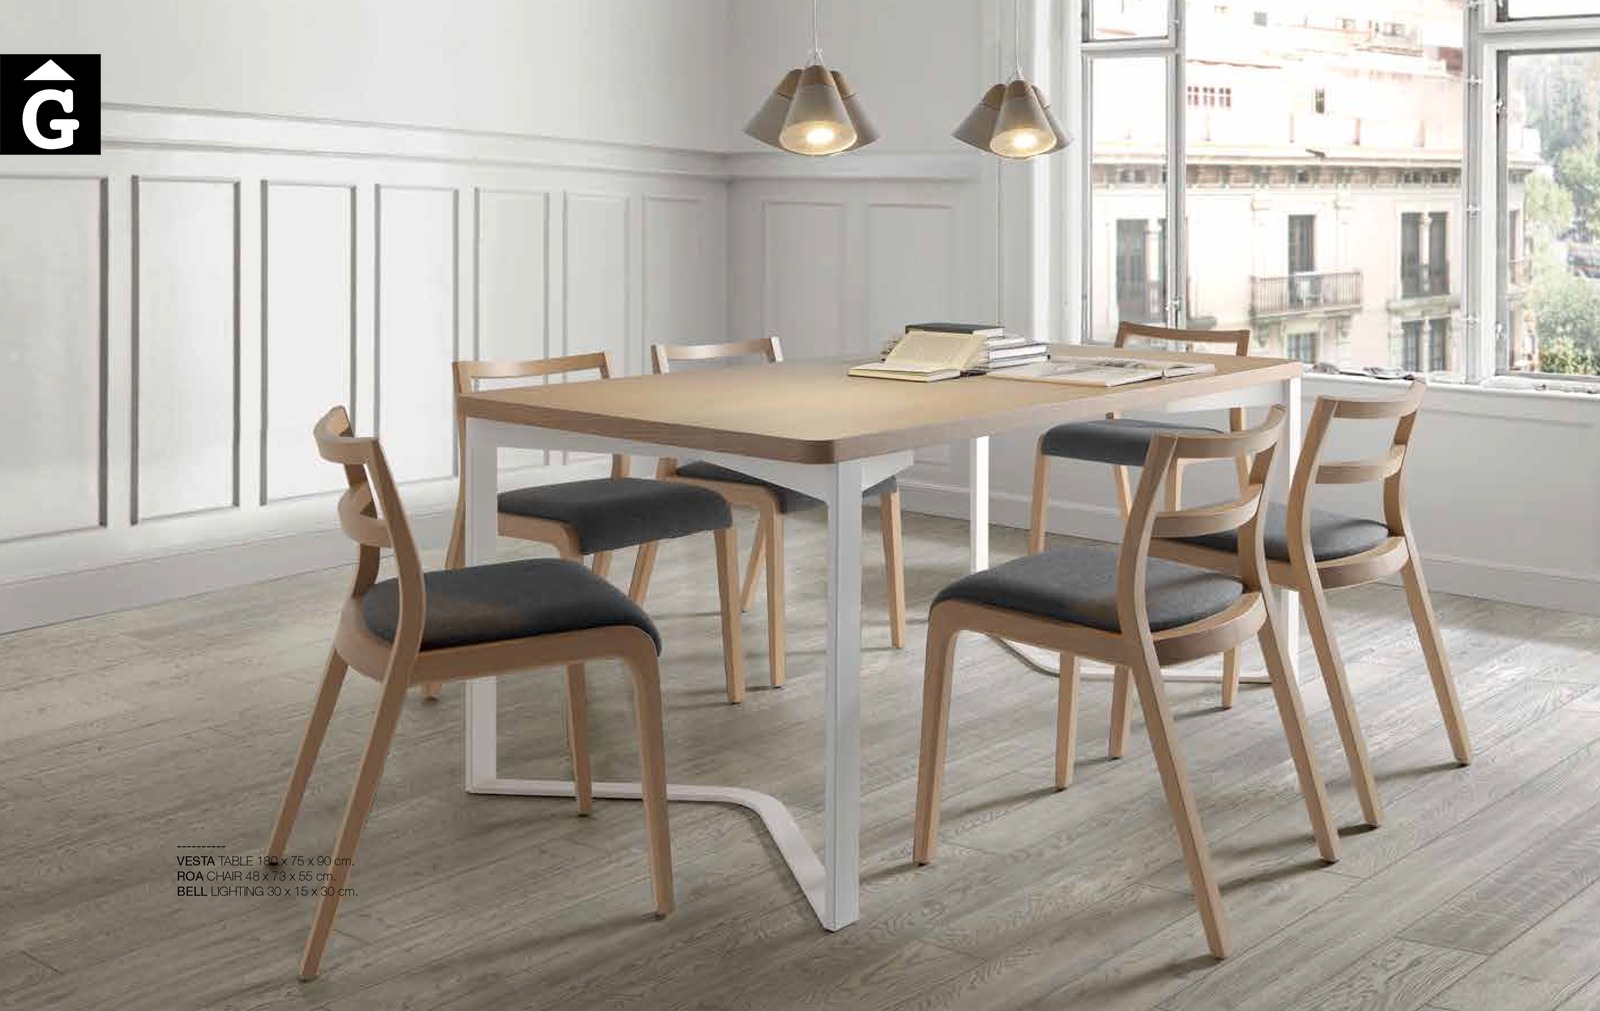 58 0 Taula Vesta ambient Loyra muebles by mobles Gifreu Idees per la llar moble de qualitat